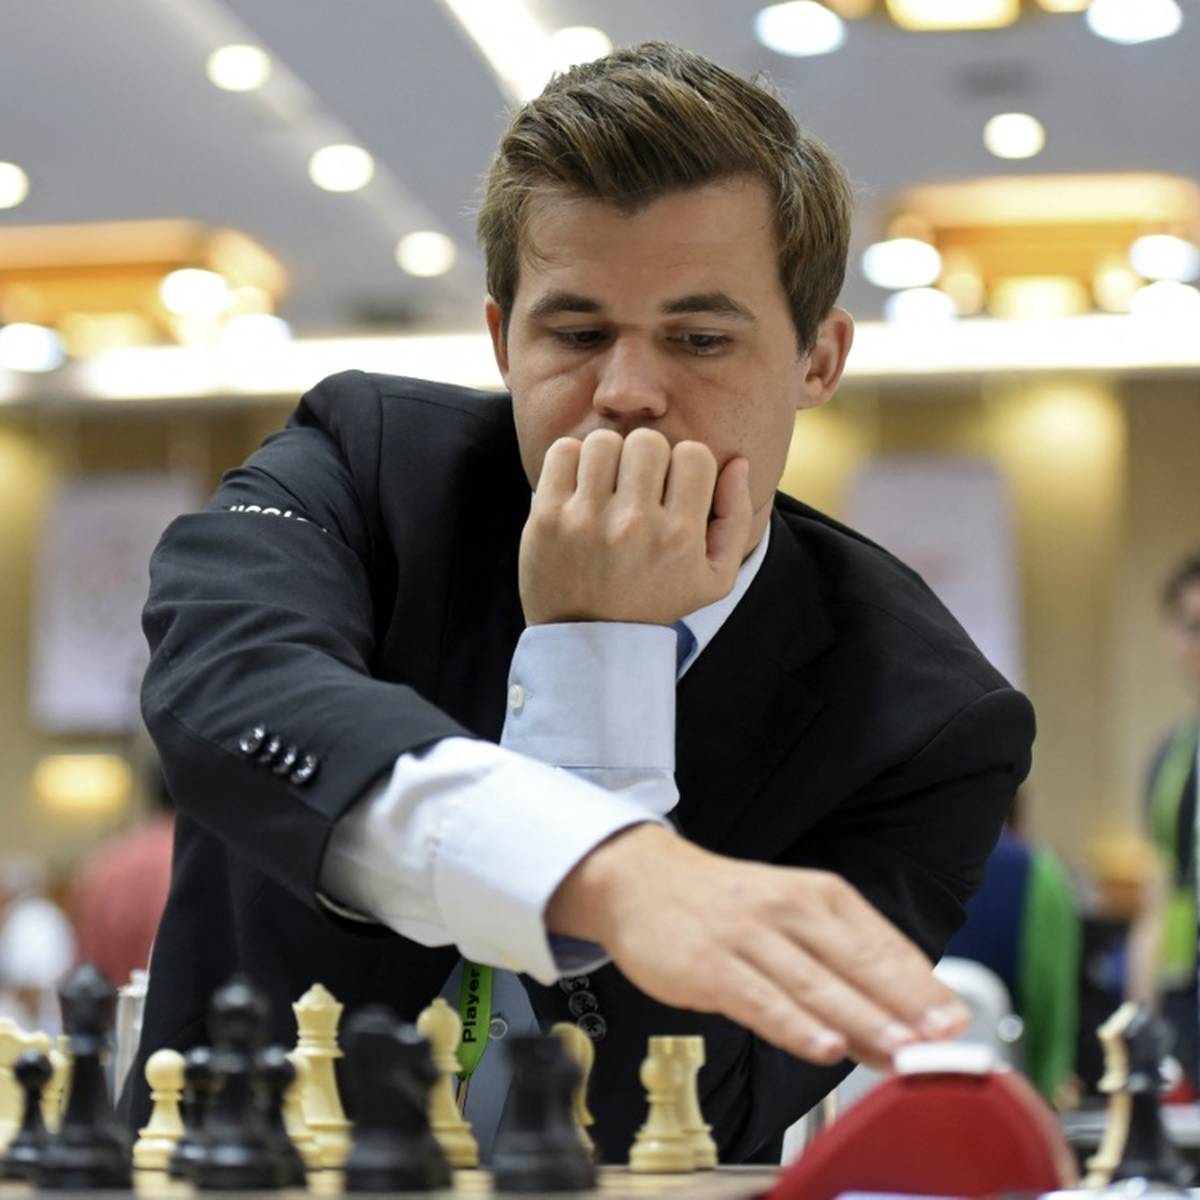 Weltmeister mit Klartext! Schach-Streit eskaliert